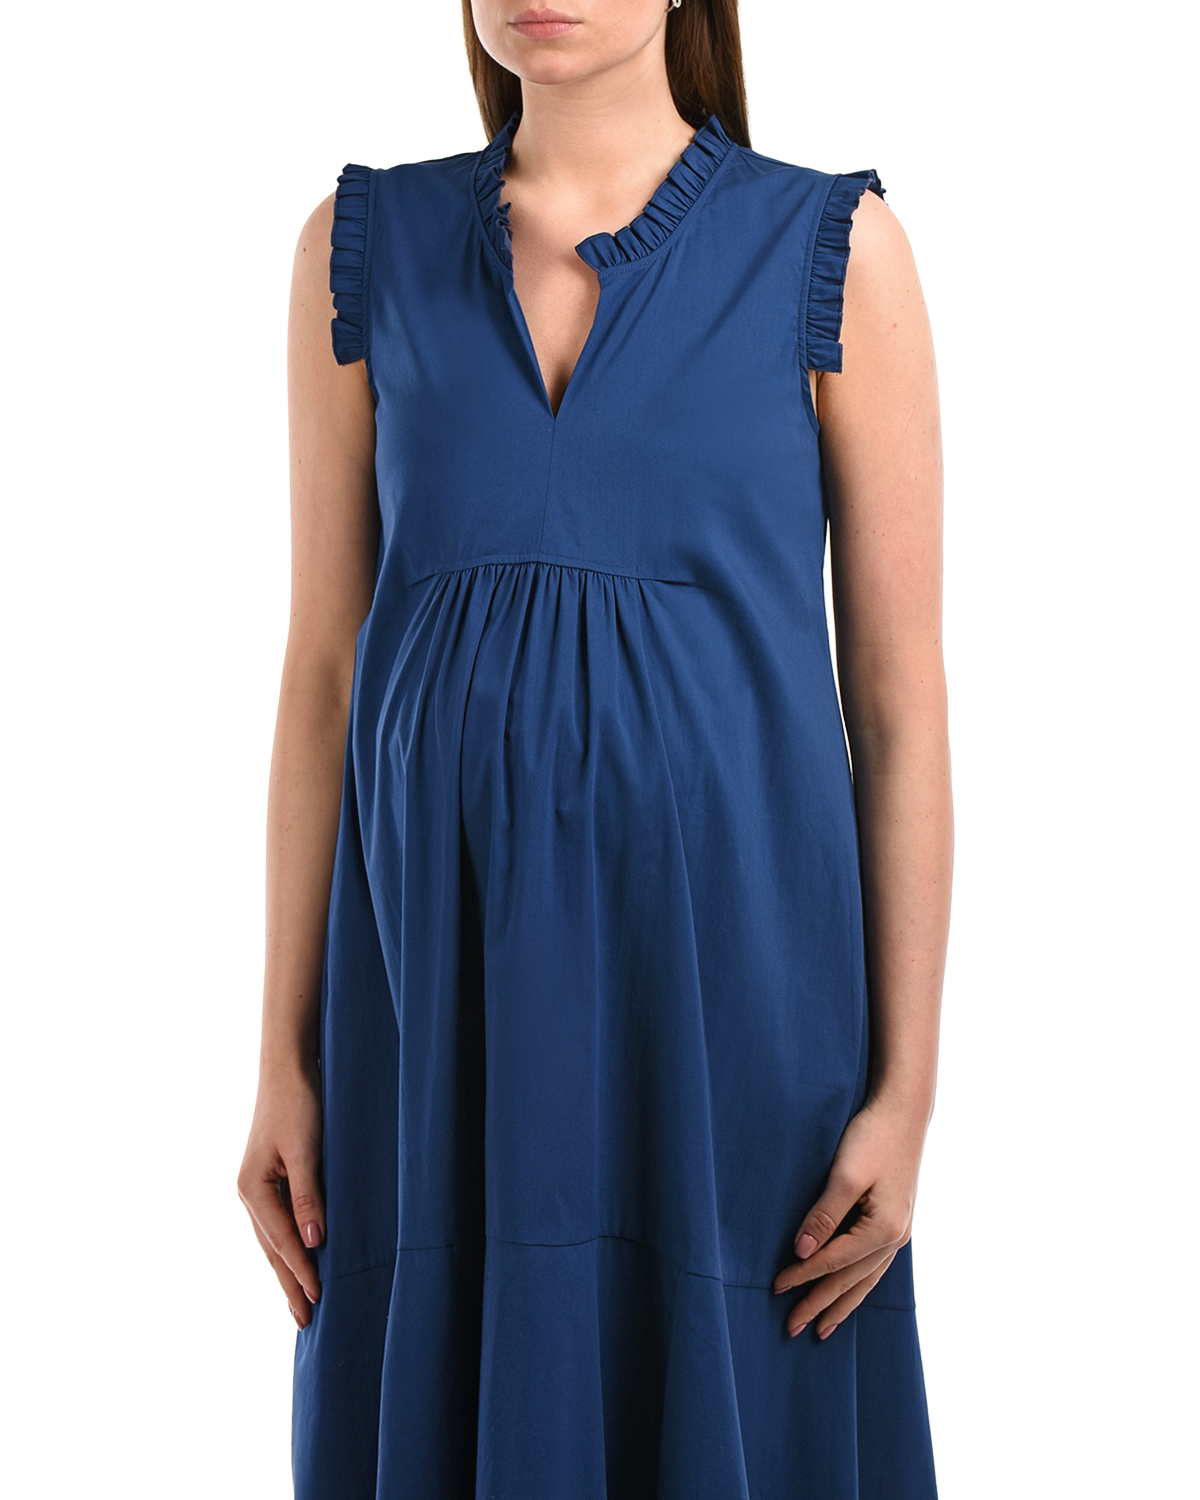 Синее платье с рюшами Attesa, размер 38, цвет синий - фото 7